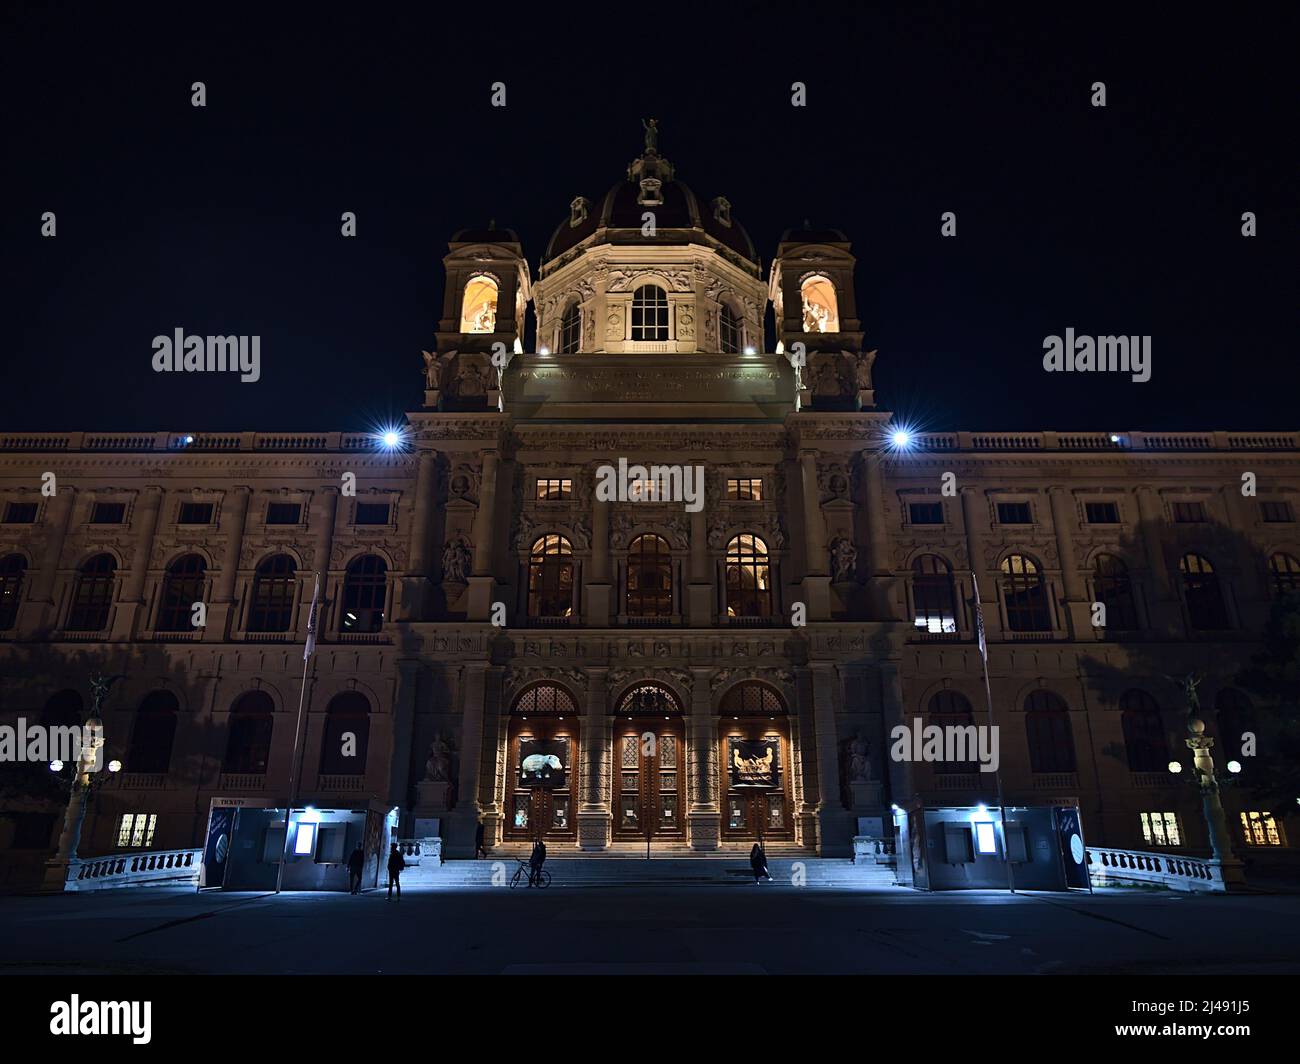 Vue de nuit sur le célèbre musée Kunsthorisches (histoire de l'art) dans le centre historique de Vienne, en Autriche, avec façade illuminée. Banque D'Images